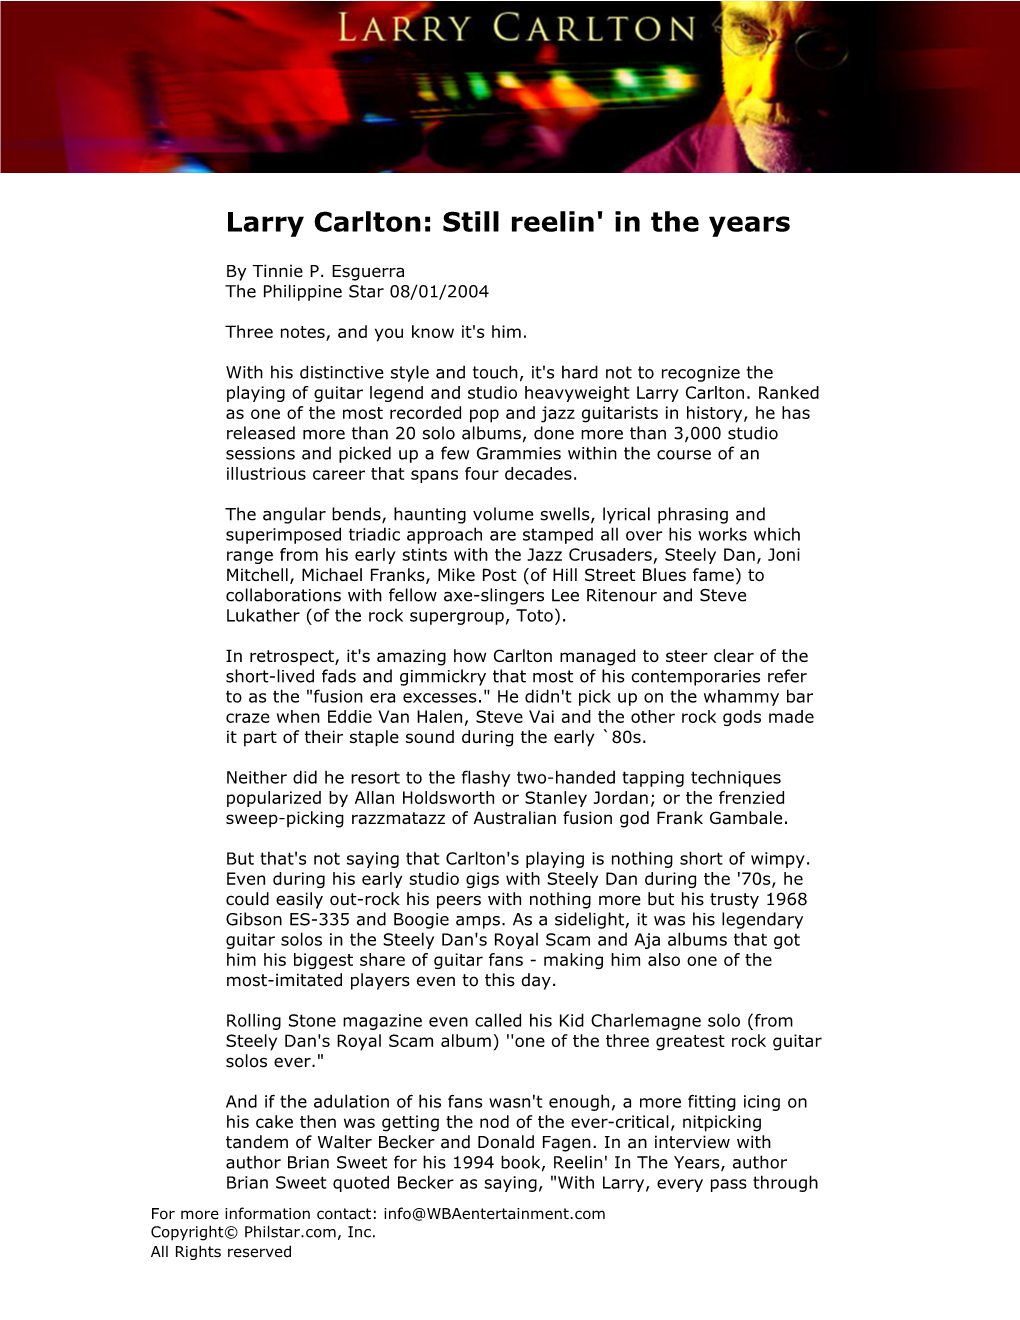 Larry Carlton: Still Reelin' in the Years